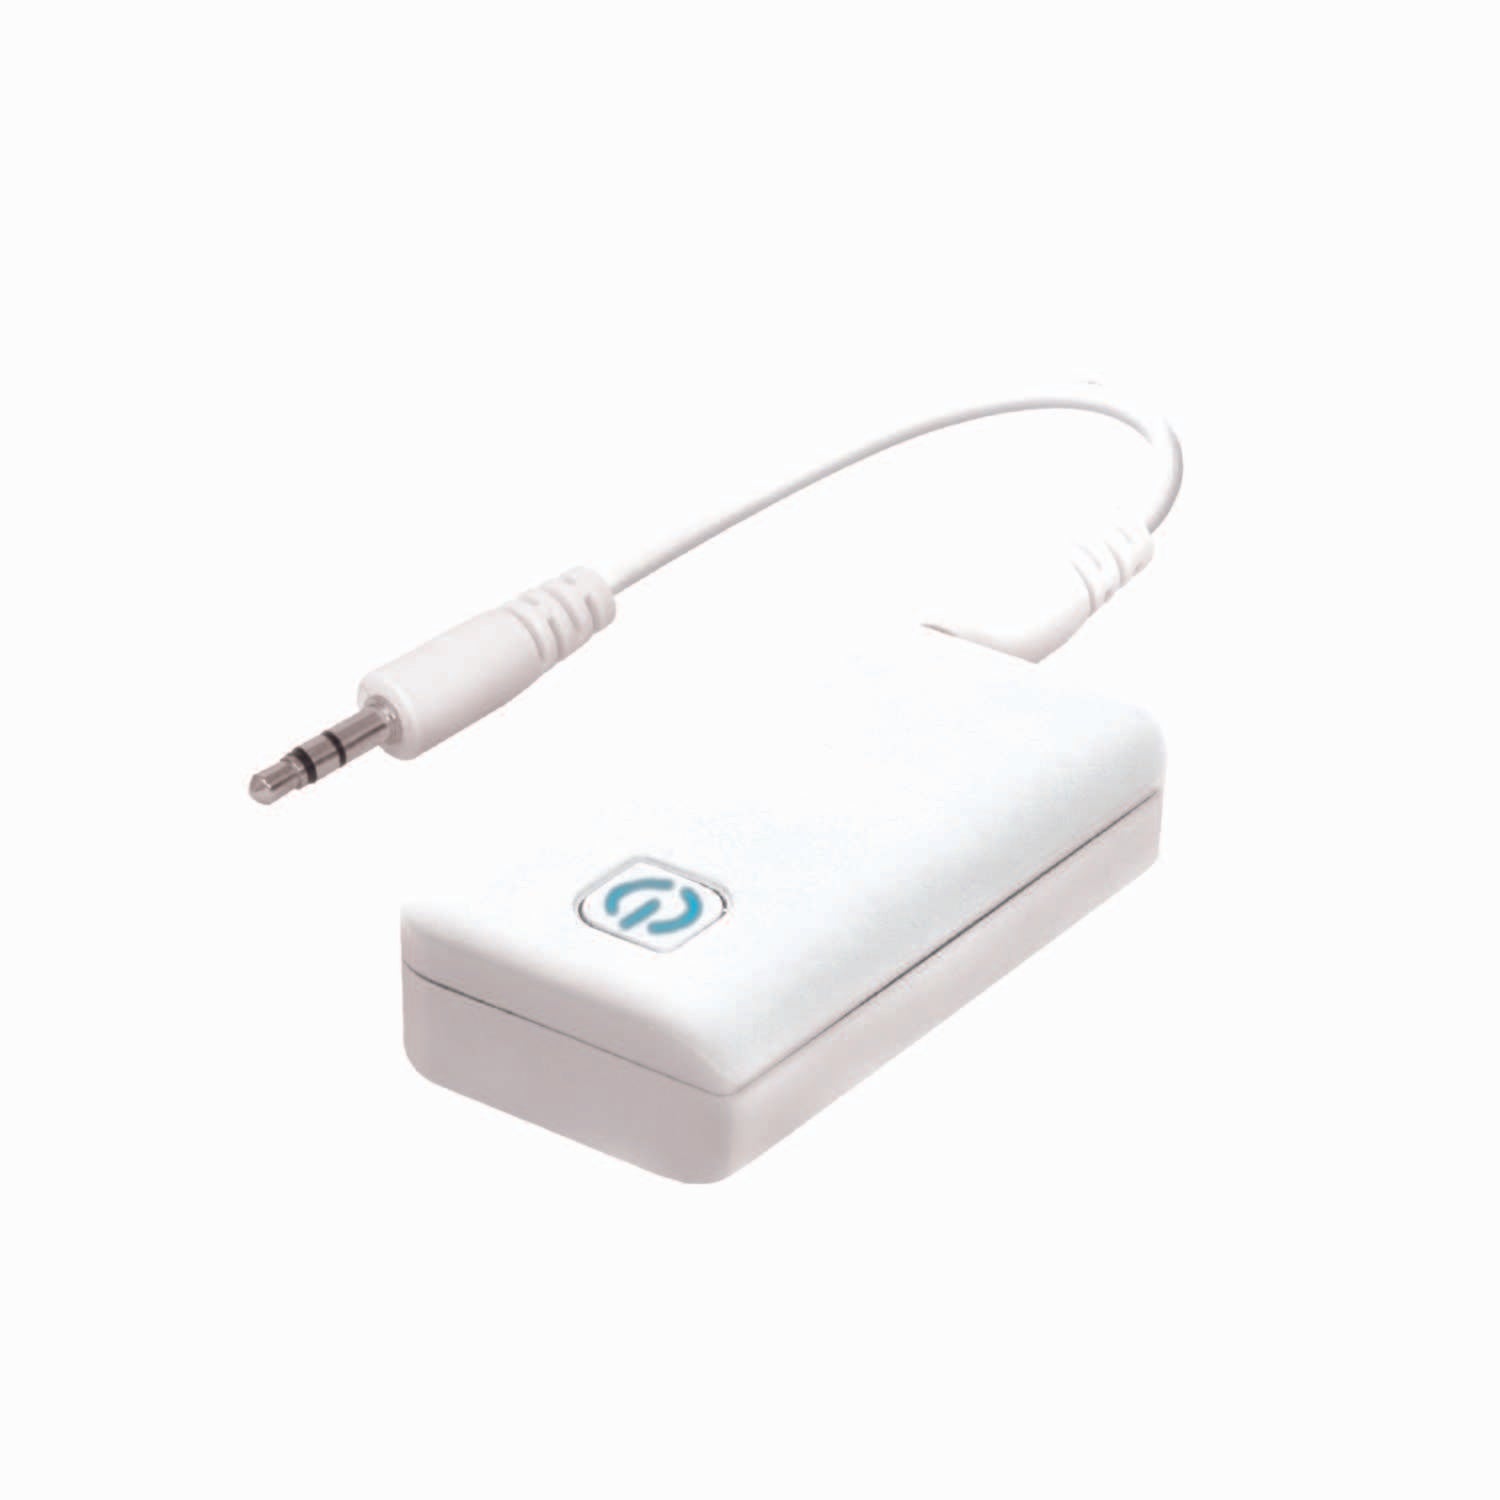 Helix/Retrak Bluetooth Transmitter Adapter